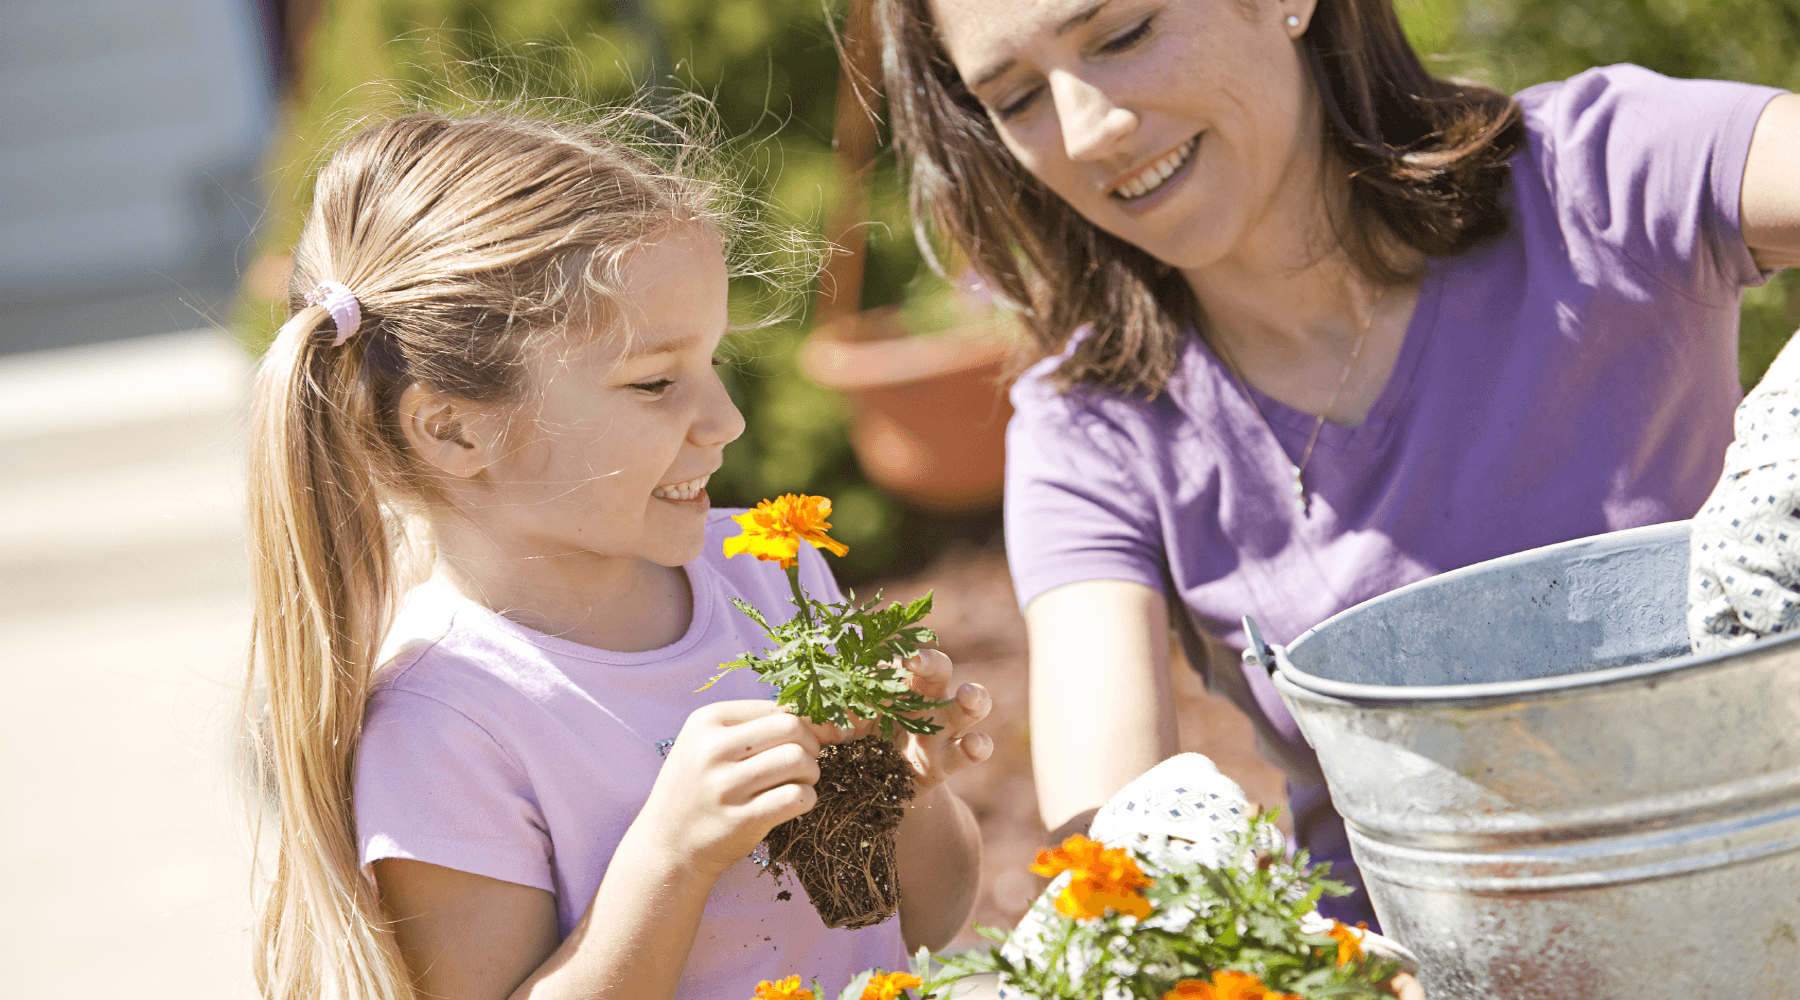 summer gardening tips